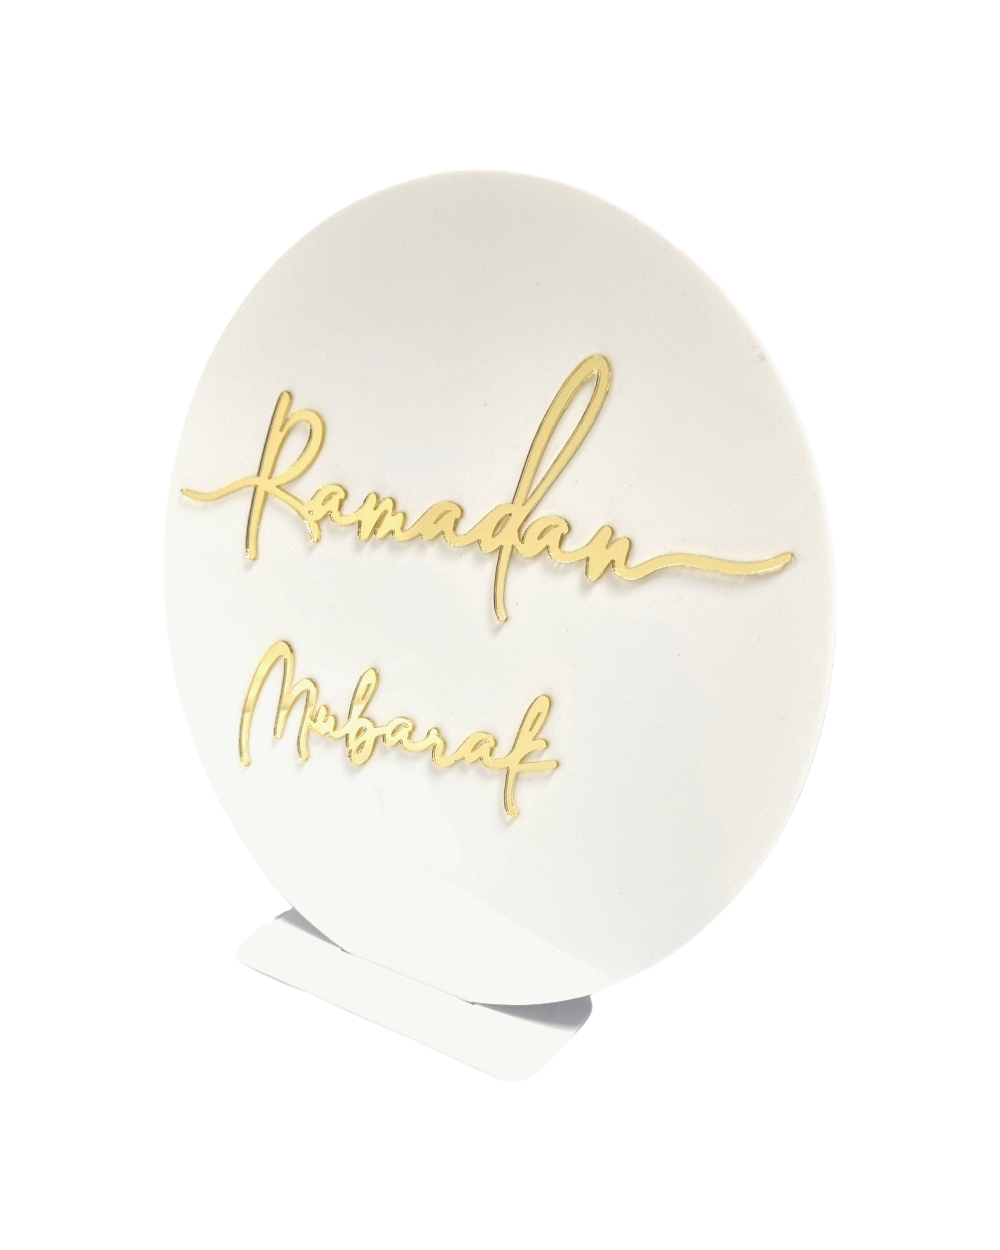 Décoration Ramadan Mubarak - Acrylique blanc et doré